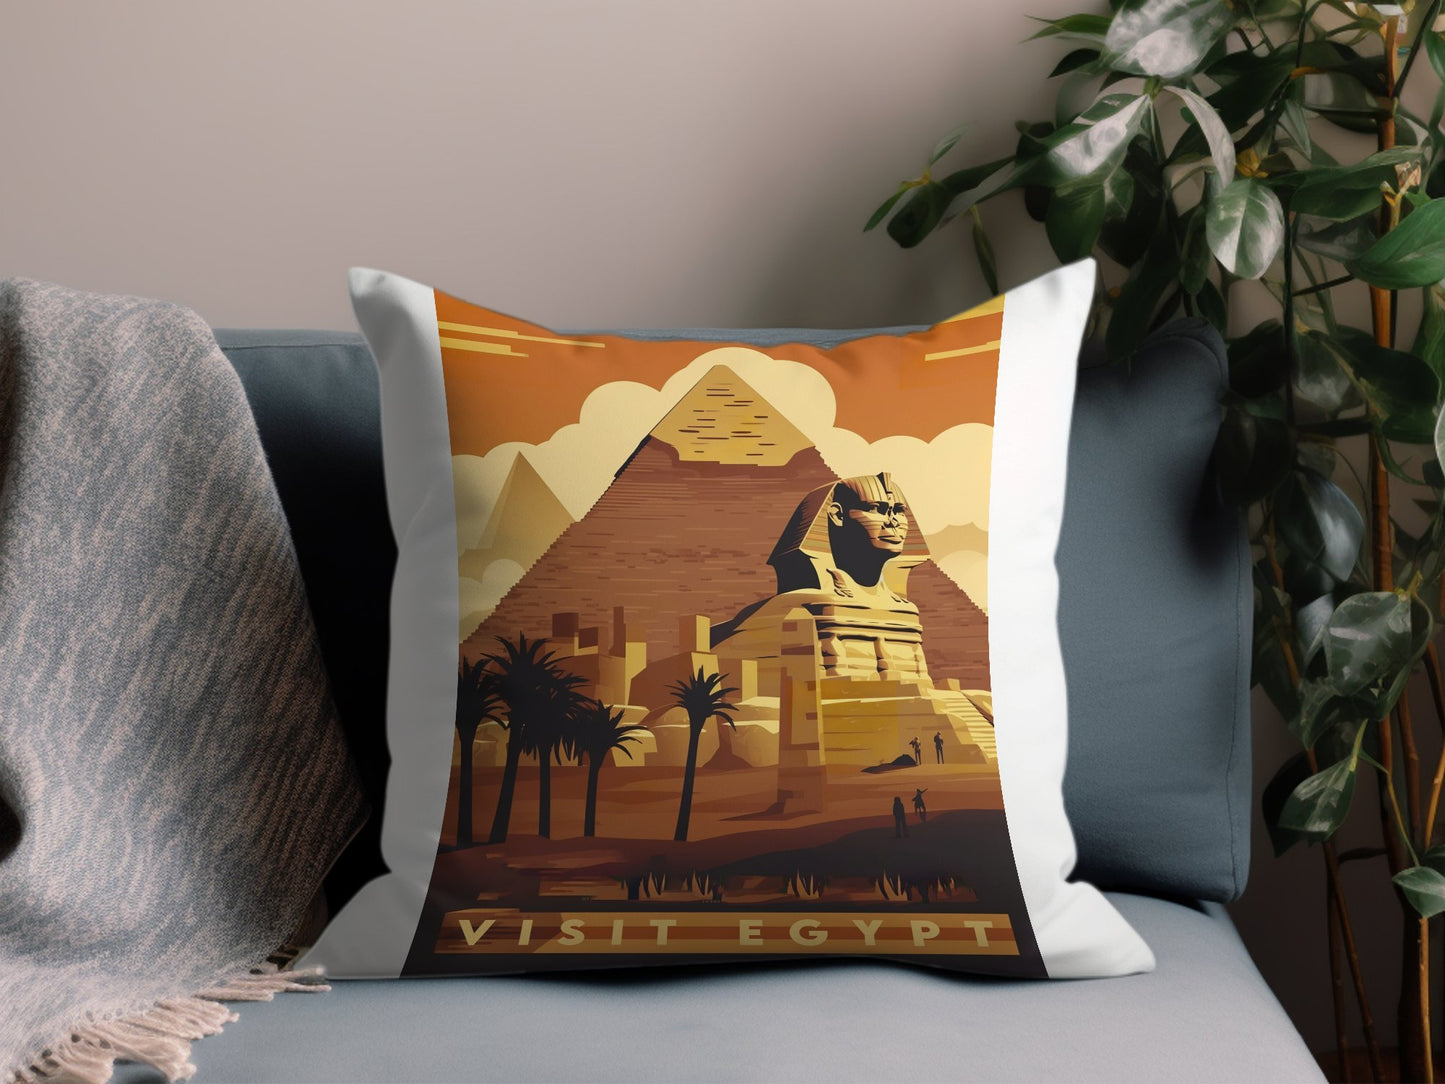 Vintage Visit Egypt Throw Pillow